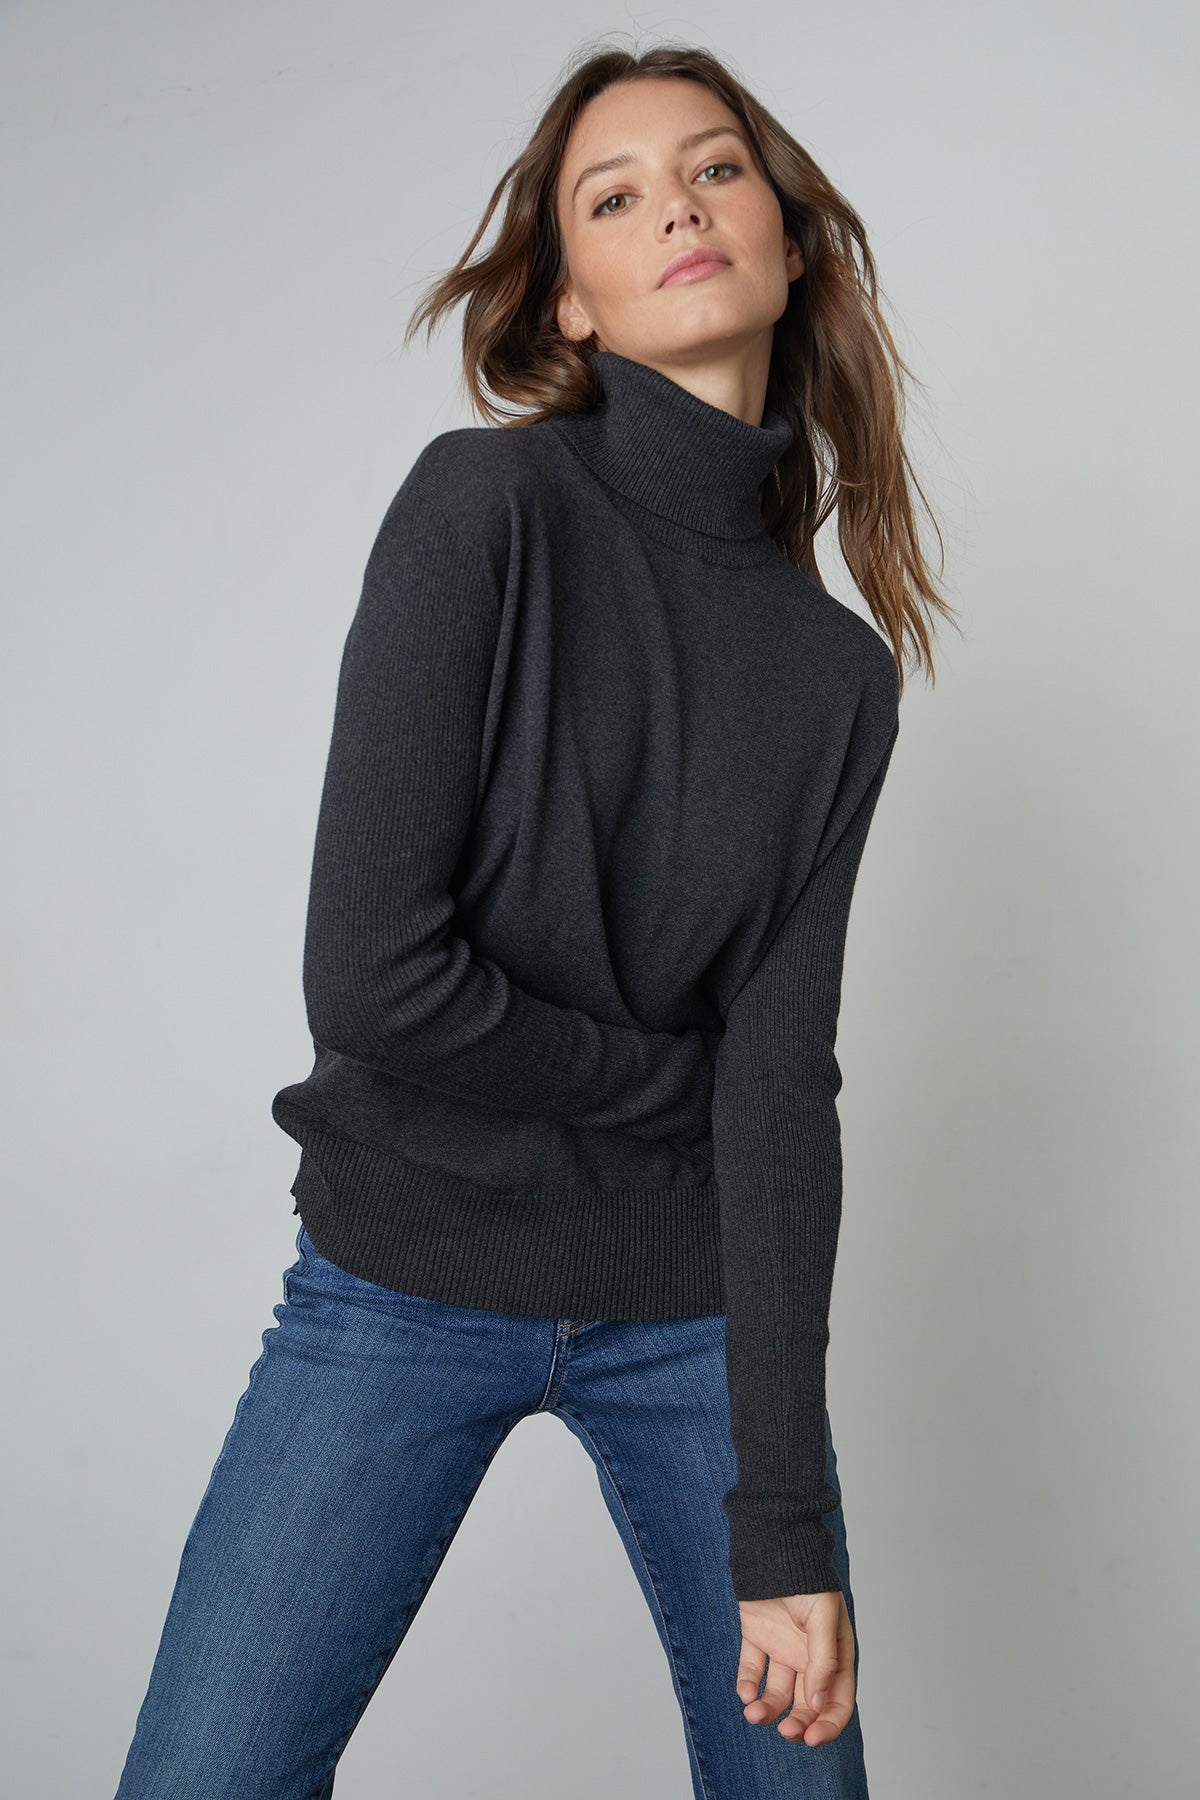 Lux Cotton Cashmere Renny Turtleneck Sweater in dark grey cinder front-25052572418241